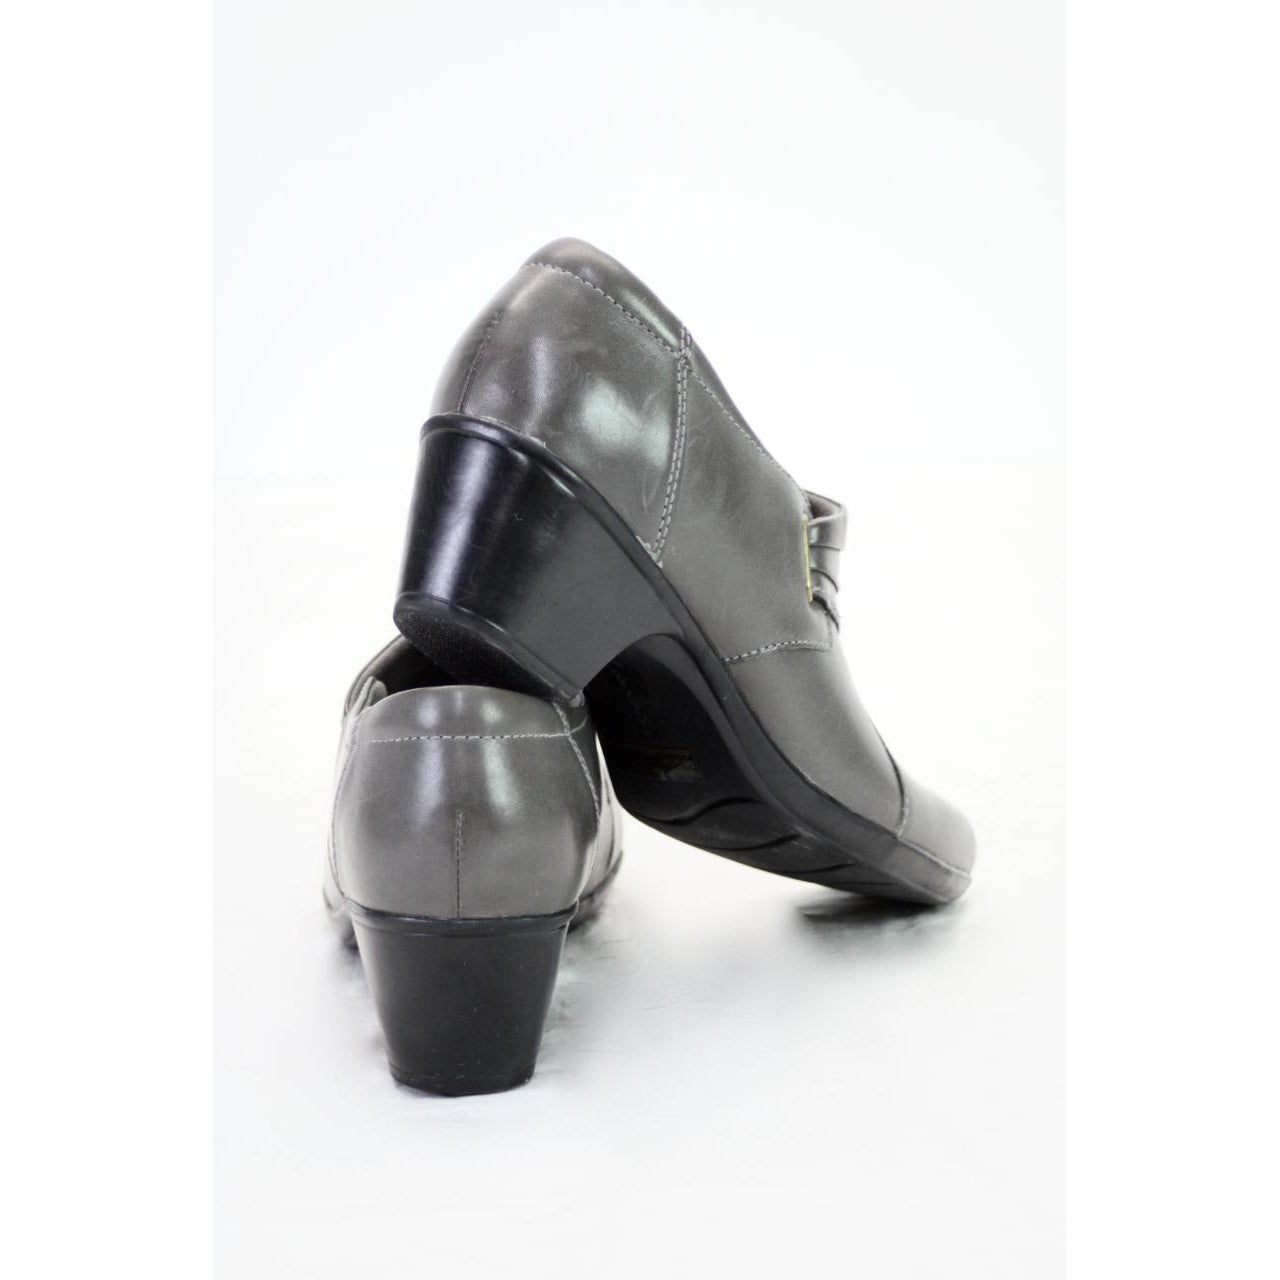 US Women's Classic Low Stiletto Heel Party Dress Platform Pump Shoes Size 5  - 12 | eBay